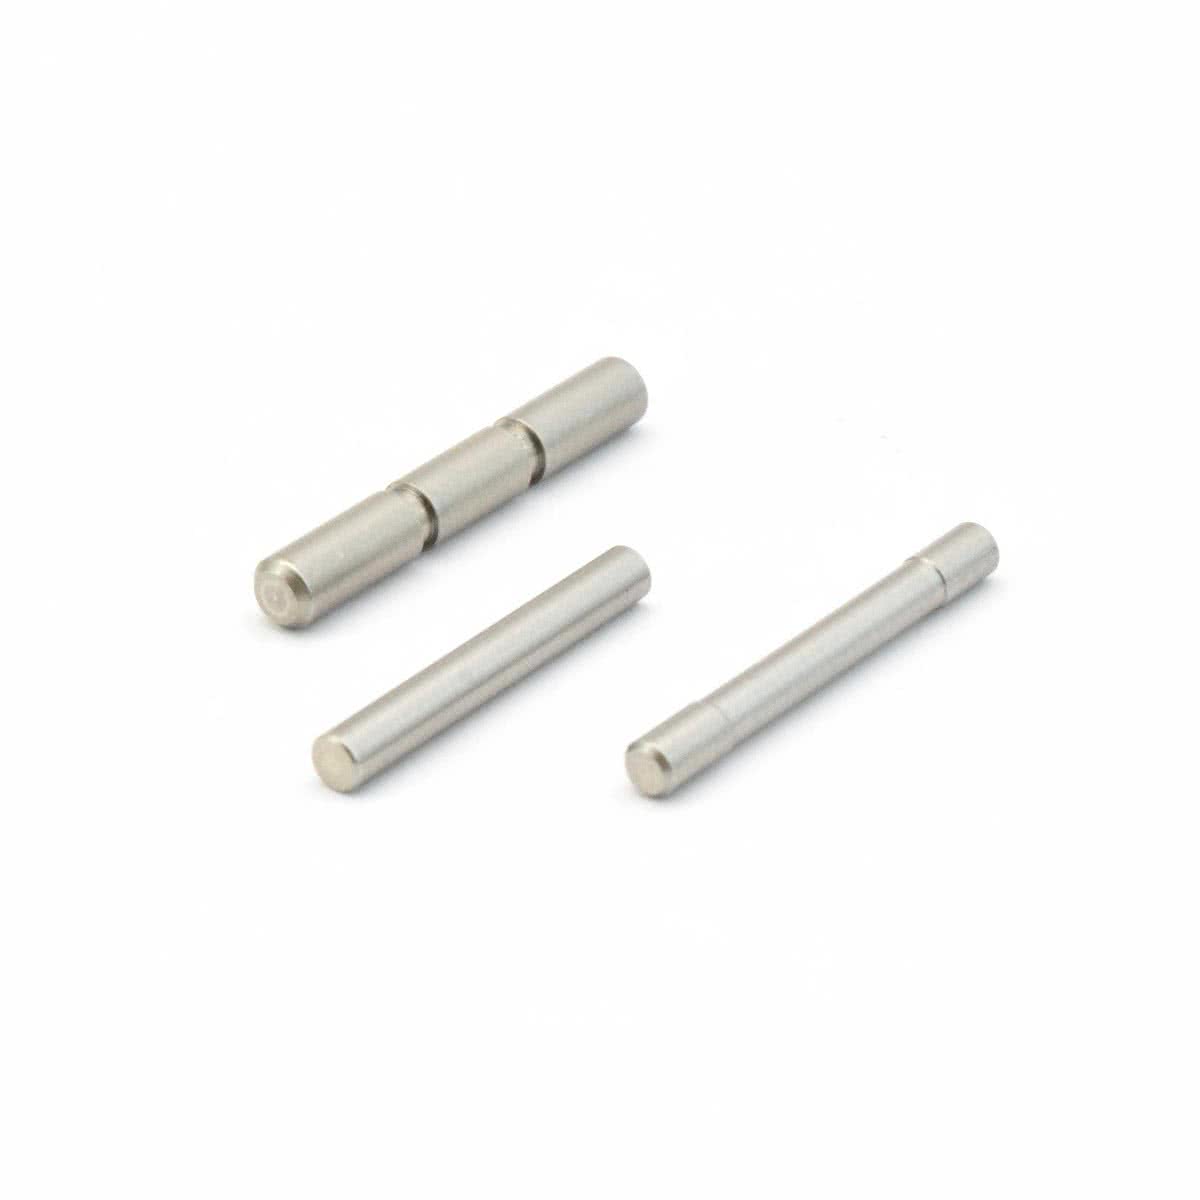 Stainless Steel GEN 3 Pin Kit Set for Glock 17 19 20 21 22 23 26 27 34 35  37 38